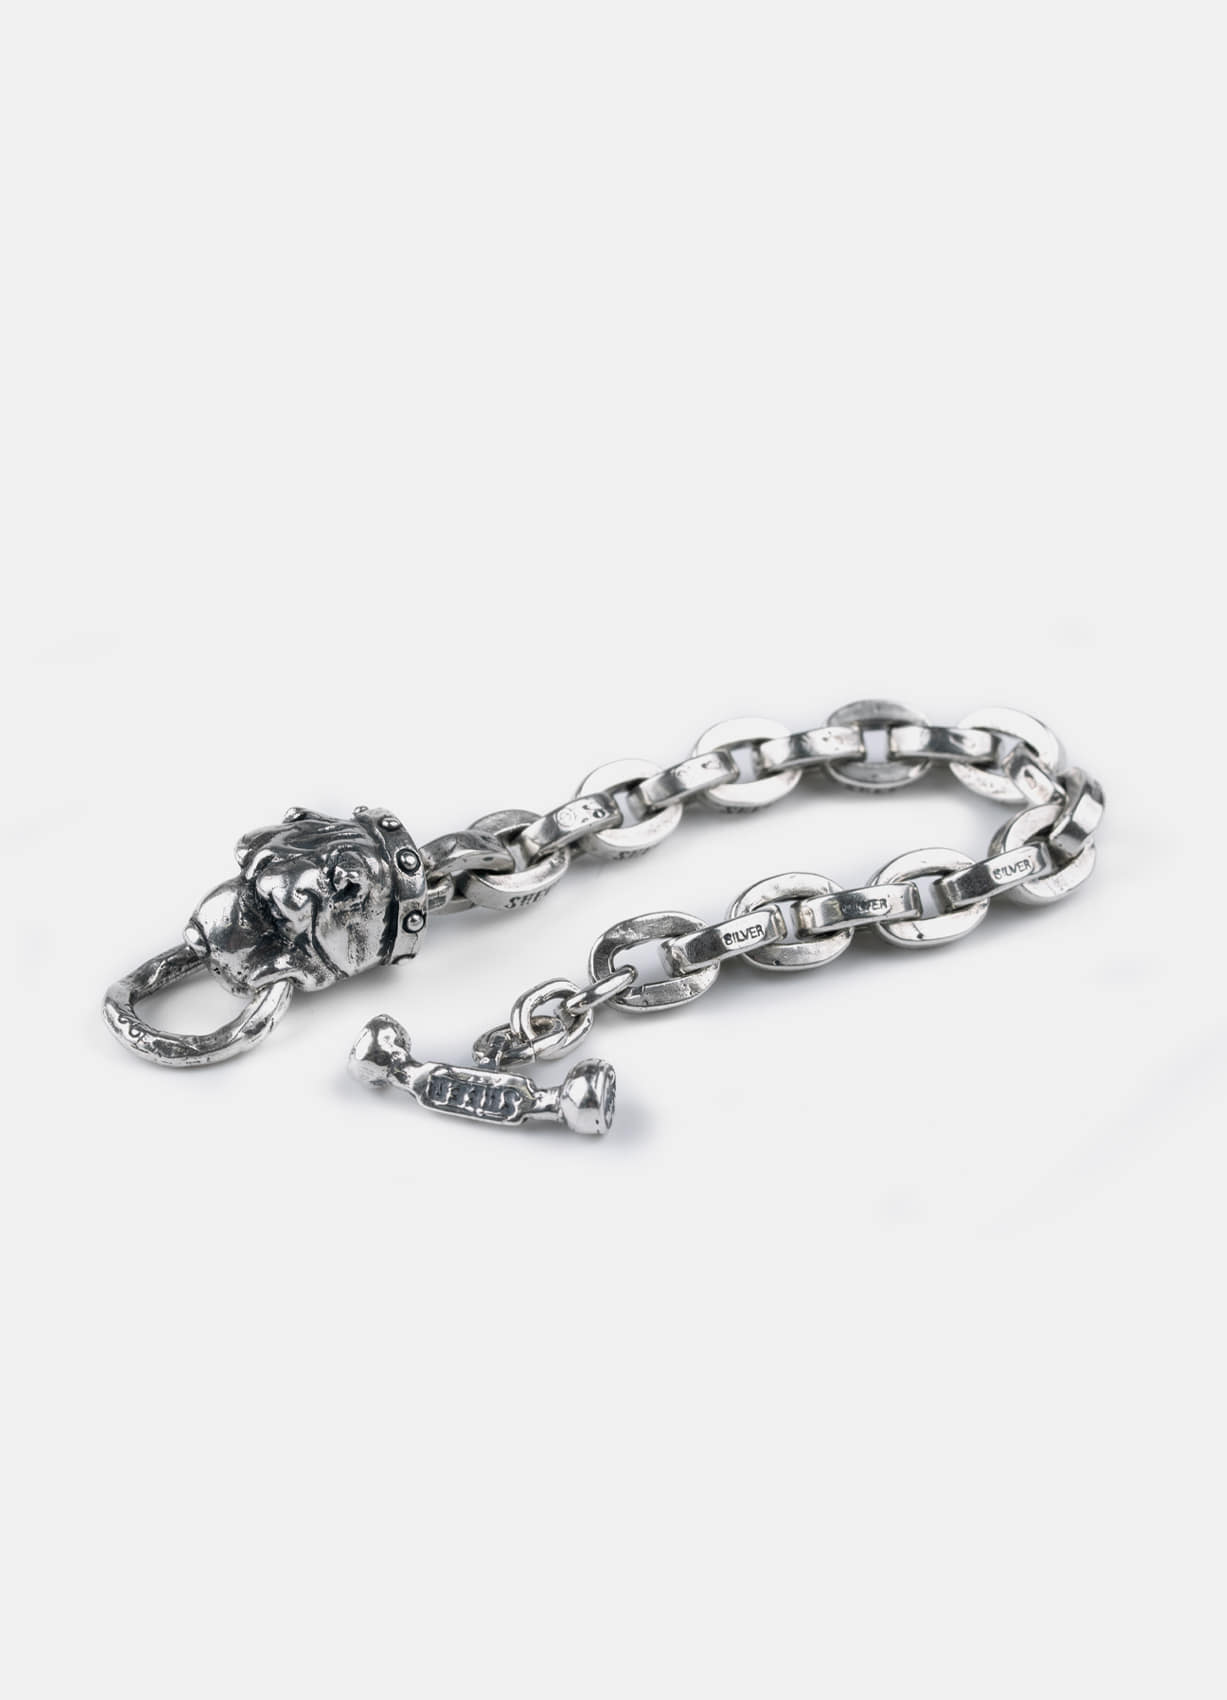 Crazy Dog Bracelet (505 Link)